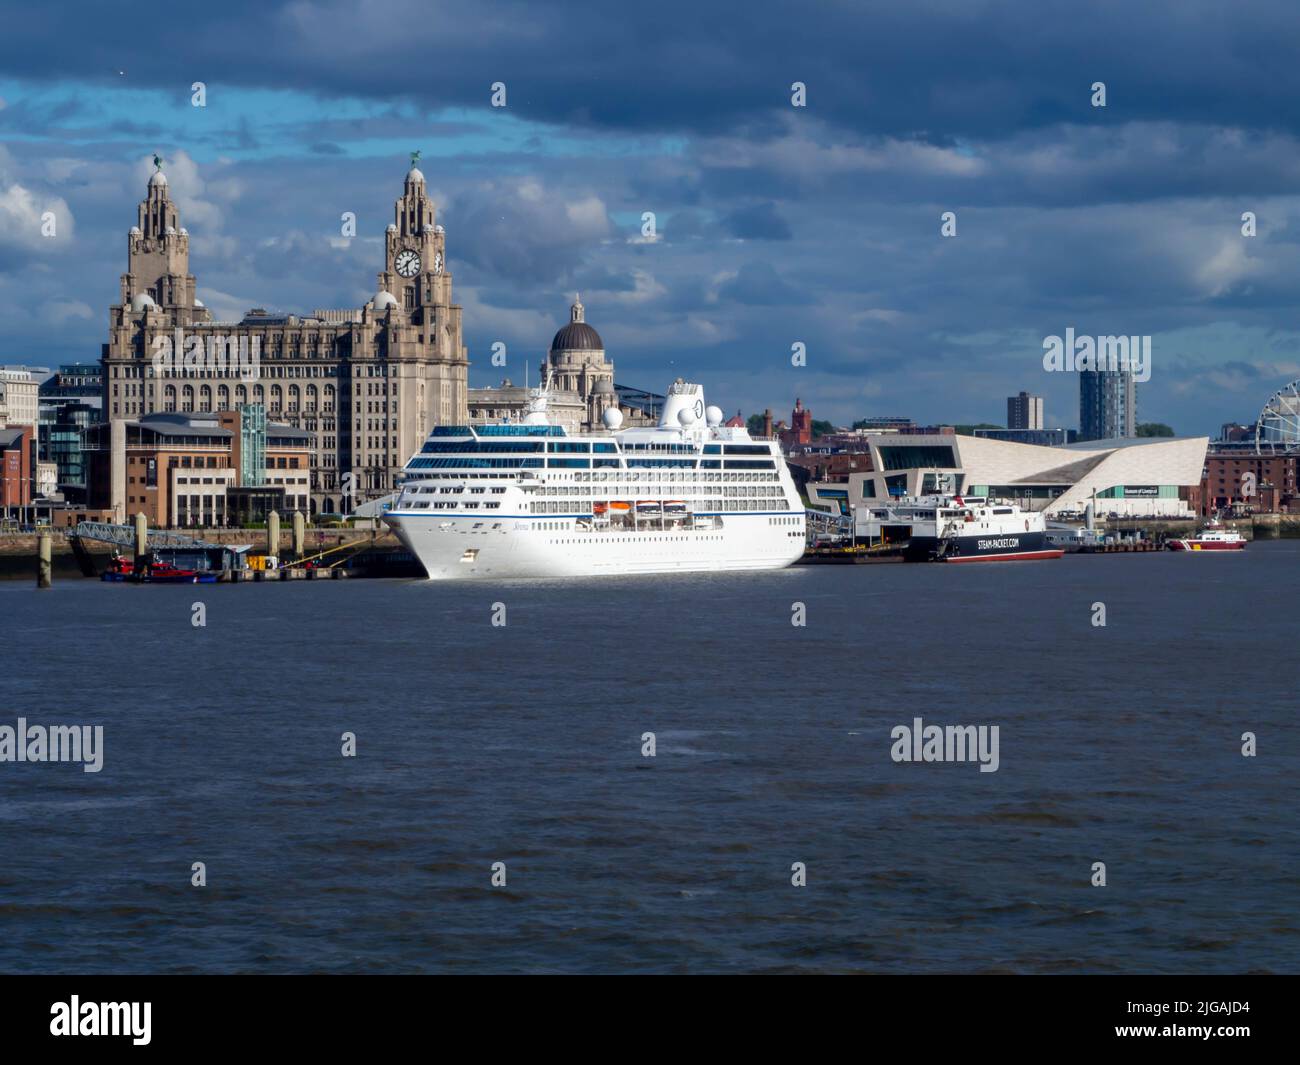 Les quais de Liverpool, où l'histoire et la modernité se combinent, offrent un paysage emblématique et un accueil au port. Banque D'Images